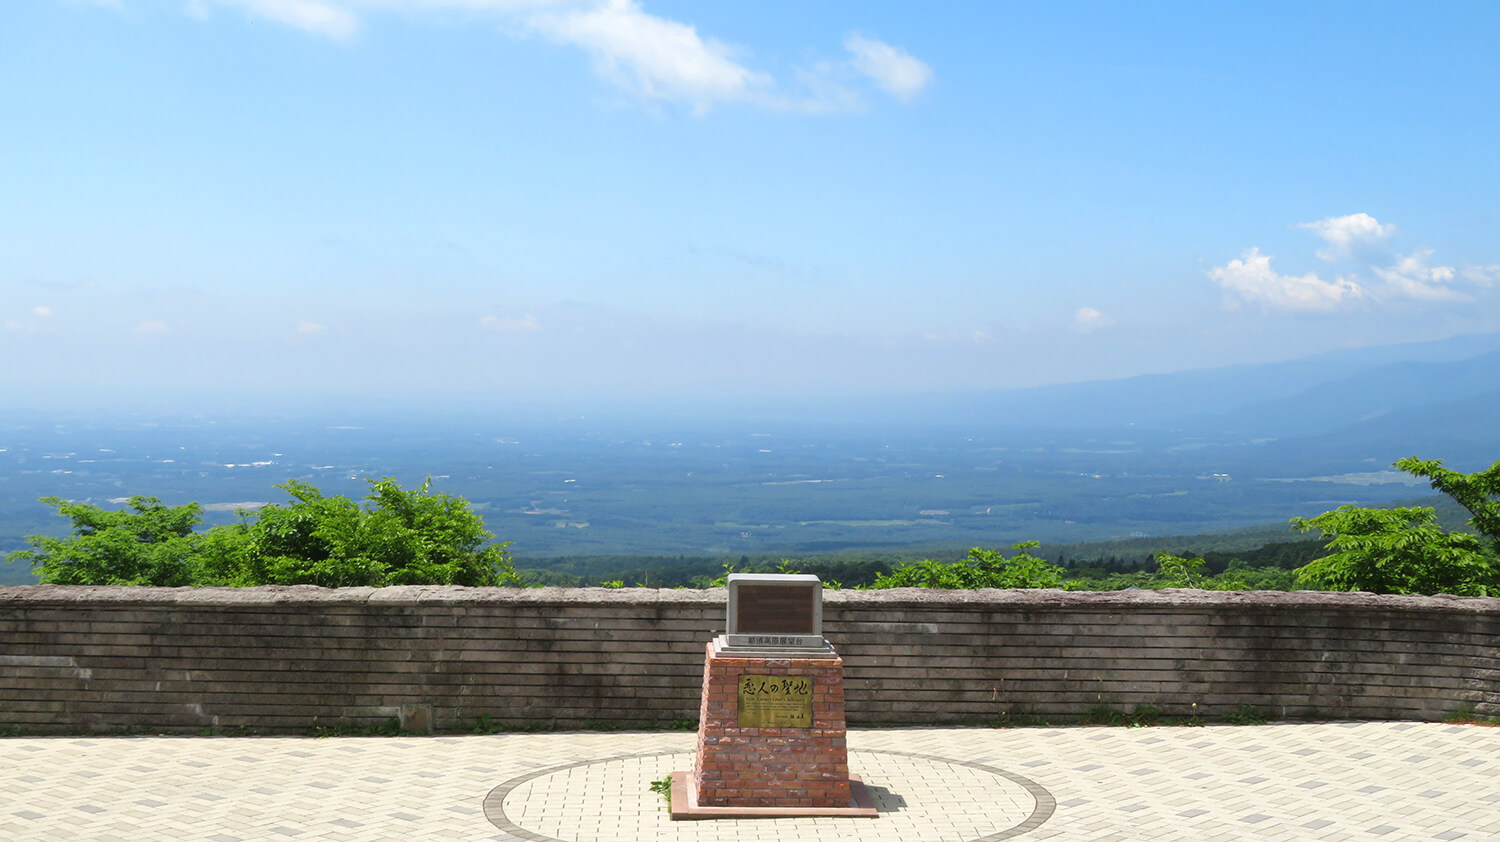 那須高原展望台は別名「恋人の聖地」。全国で100番目に登録された記念すべき場所で、プロポーズの名所にもなっている